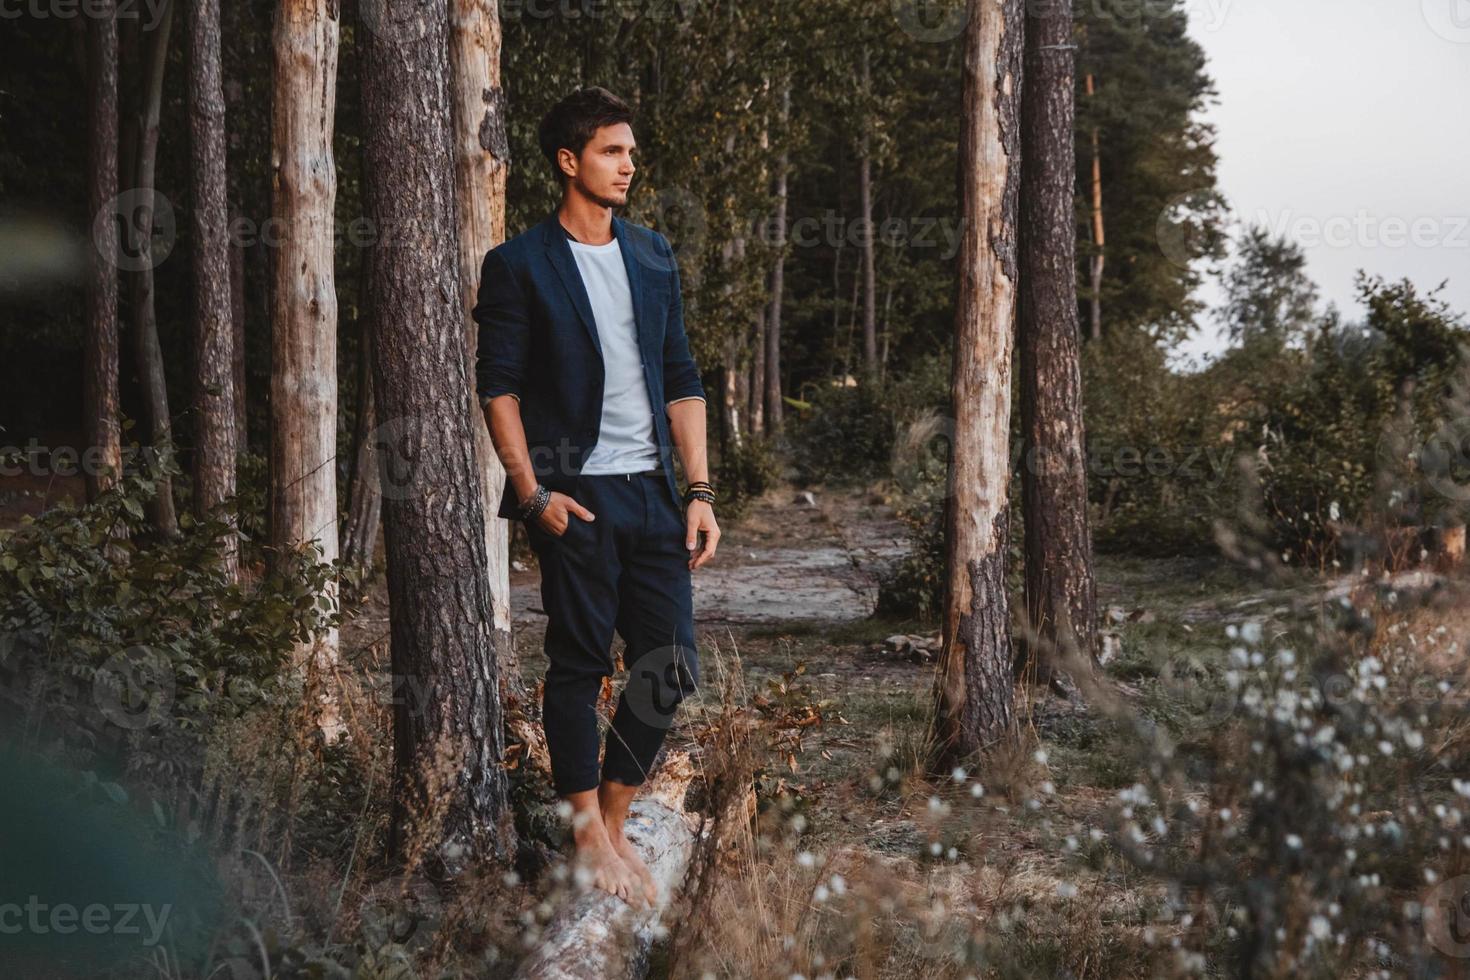 homme posant à l'extérieur dans la forêt se tient pieds nus sur une bûche, portant une veste à carreaux photo